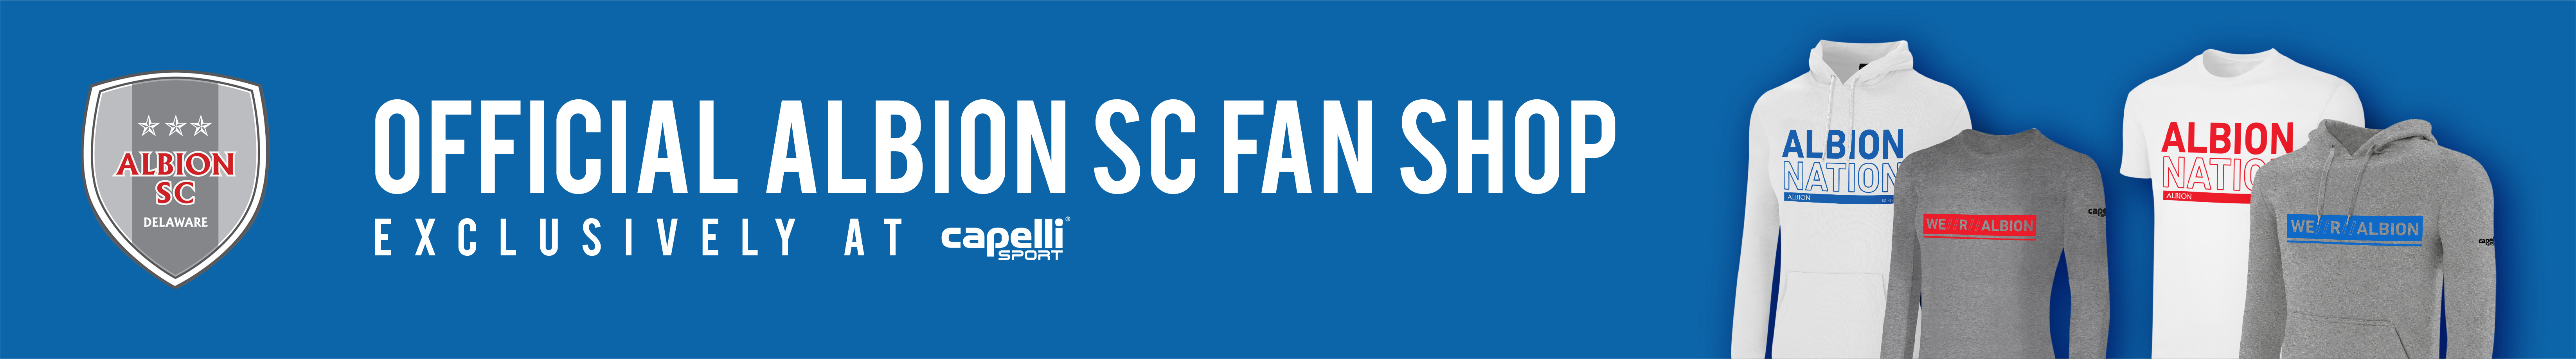 Albion SC Fan Shop